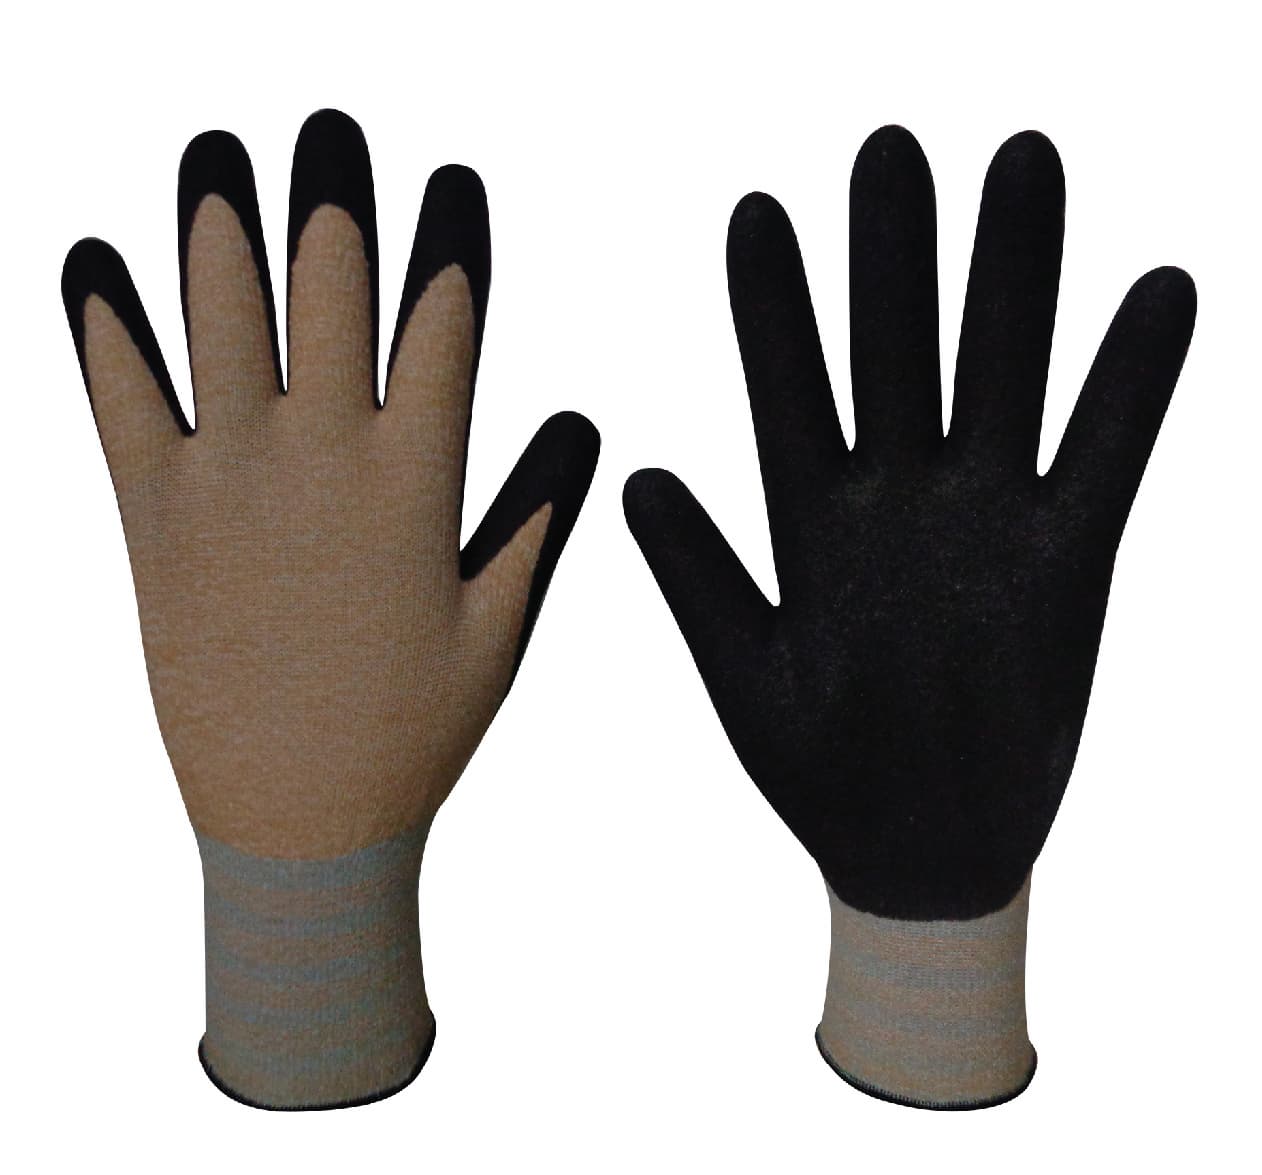 Natural Grip200 Corn_NBR Sandy coating gloves